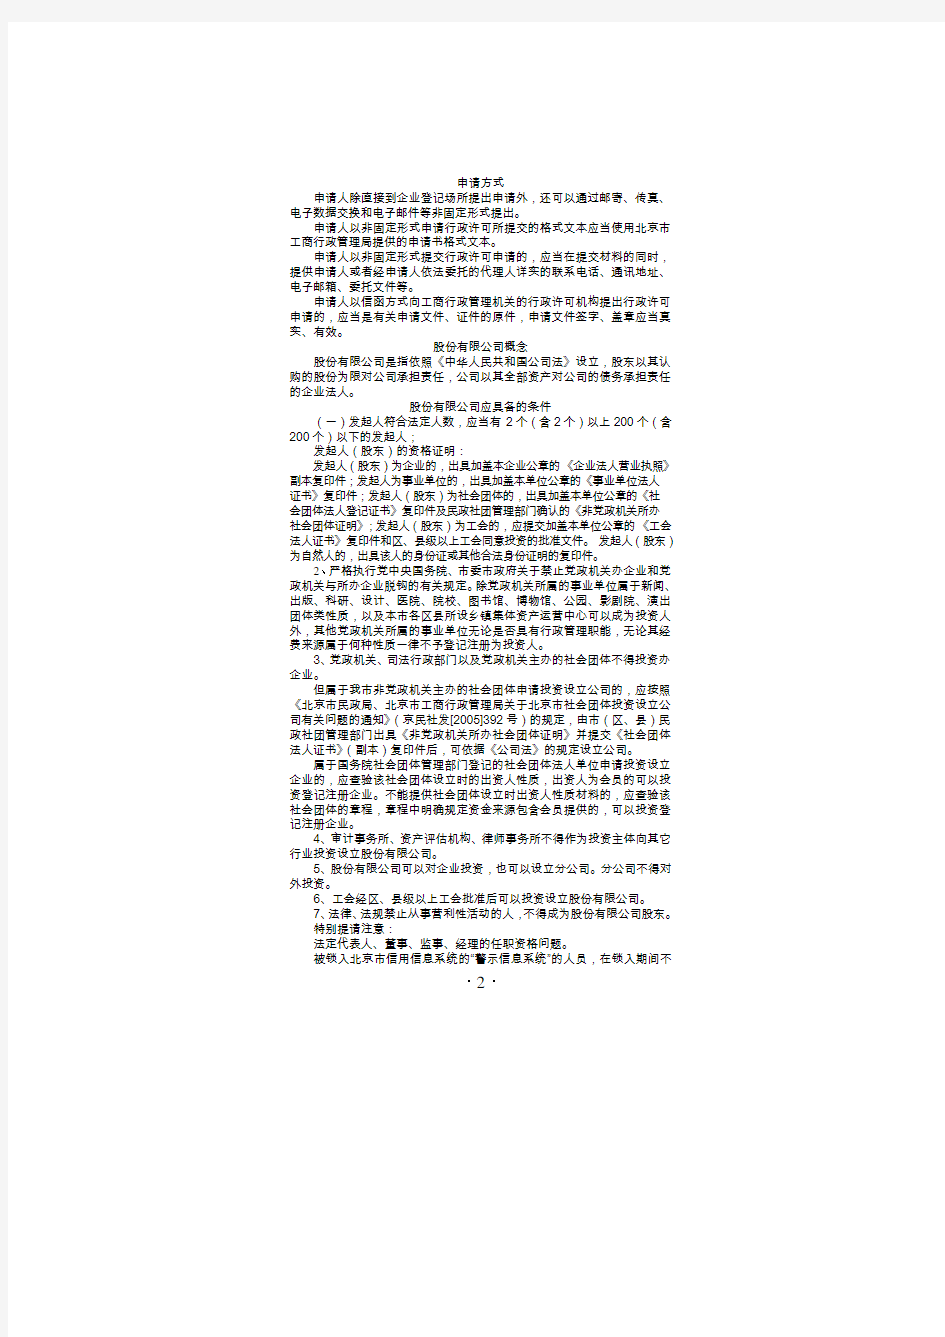 北京市工商局办理股份公司登记一次性告知单